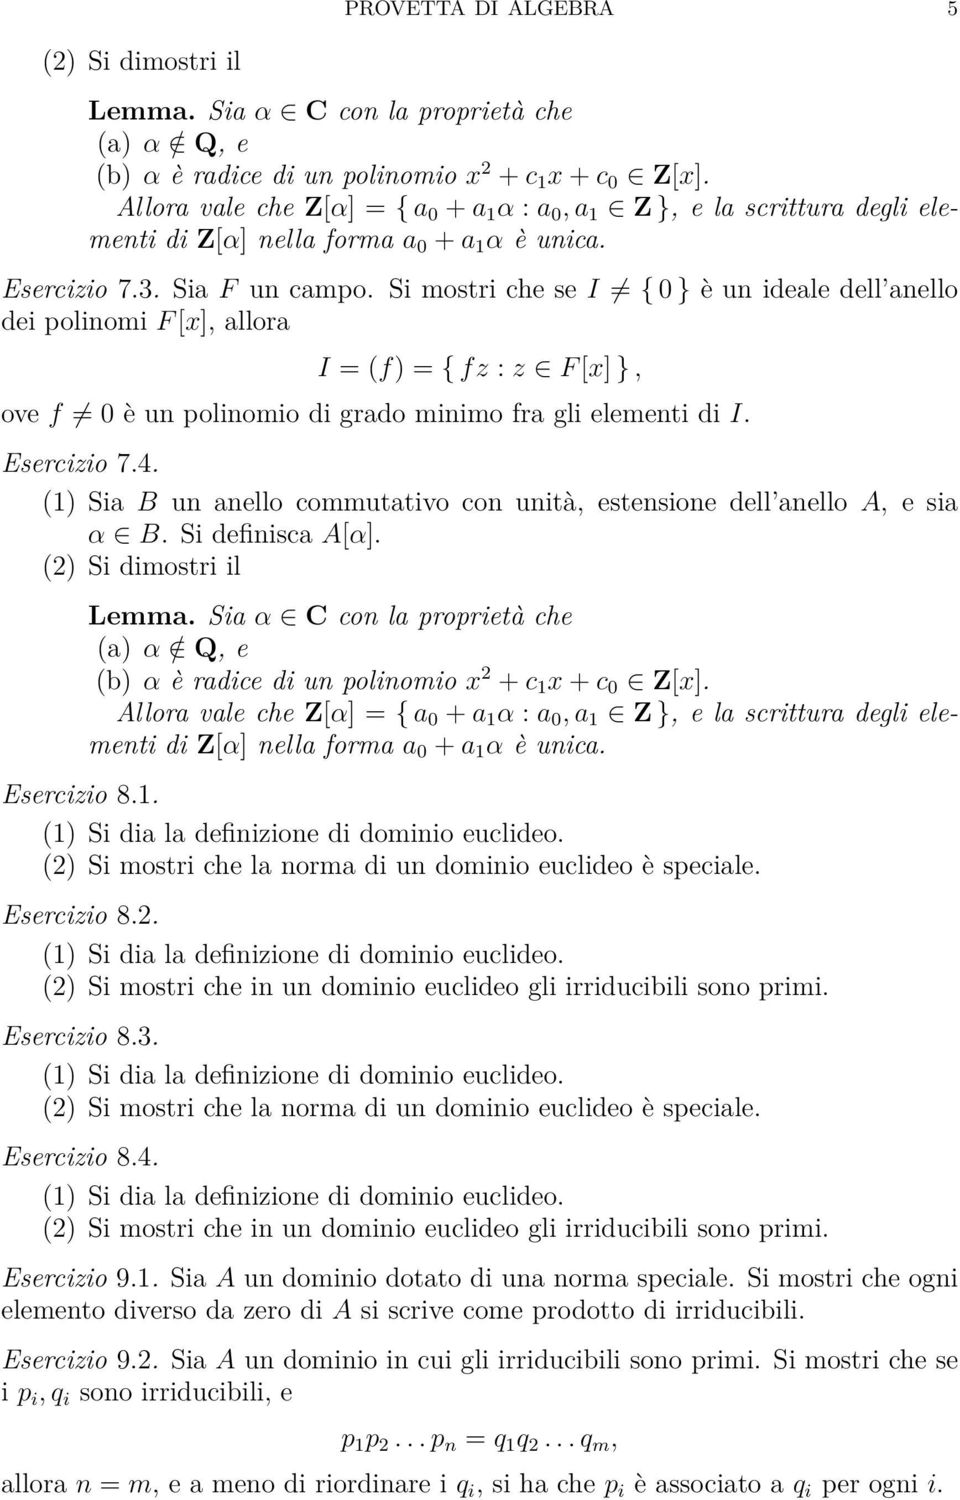 (2) Si mostri che la norma di un dominio euclideo è speciale. Esercizio 8.4. (2) Si mostri che in un dominio euclideo gli irriducibili sono primi. Esercizio 9.1.